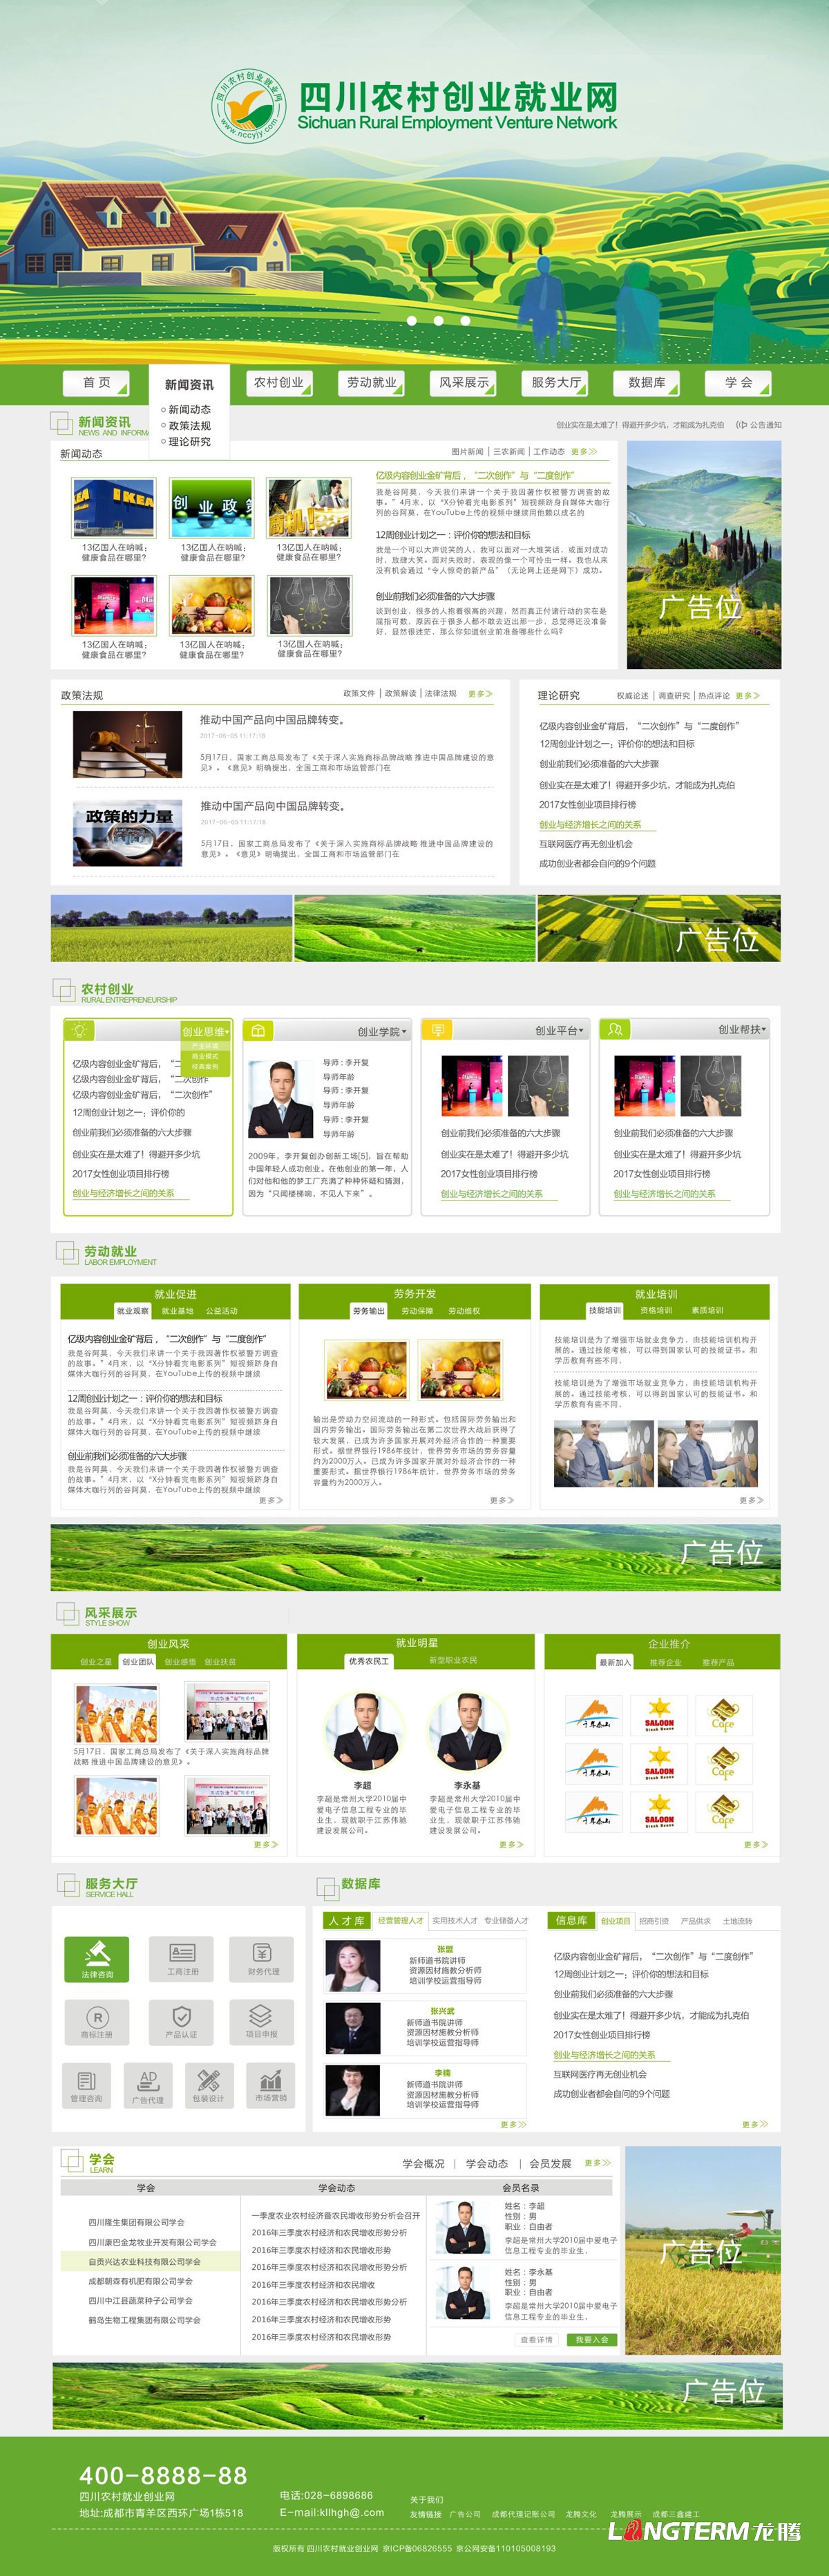 四川农村创业就业网设计制作|四川农合网网站建设开发公司